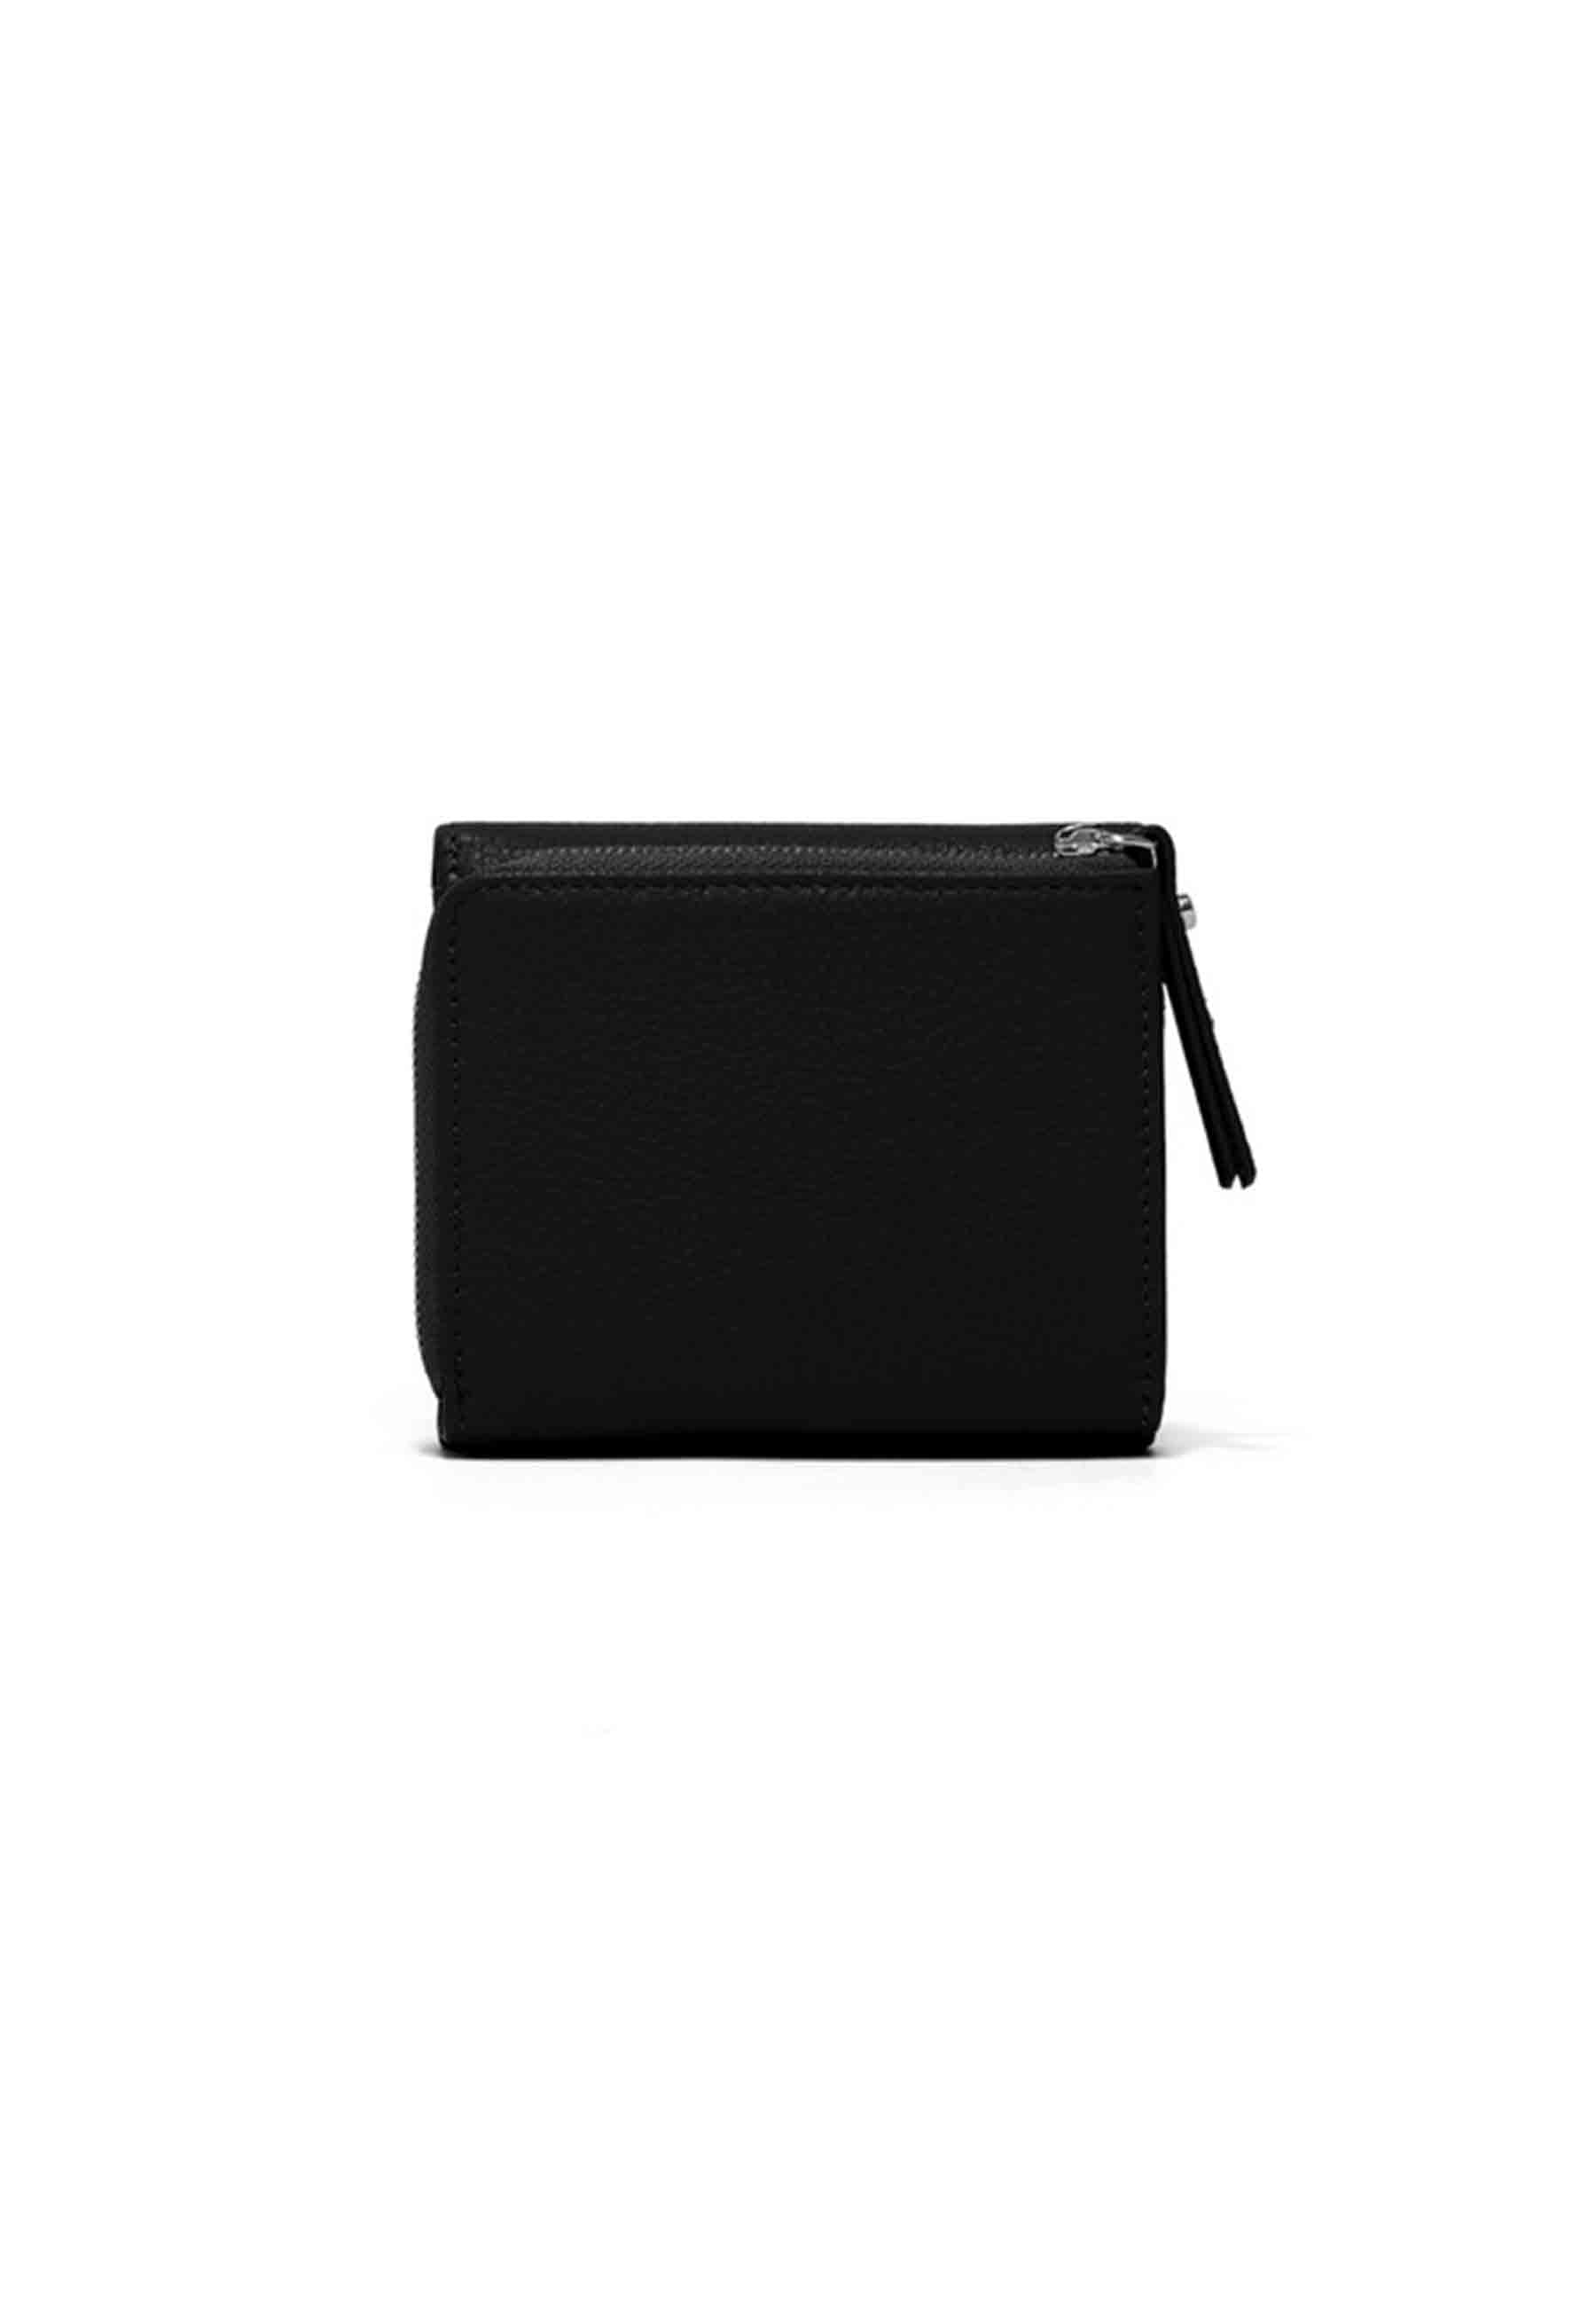 Portefeuille femme compact en cuir noir avec porte-monnaie